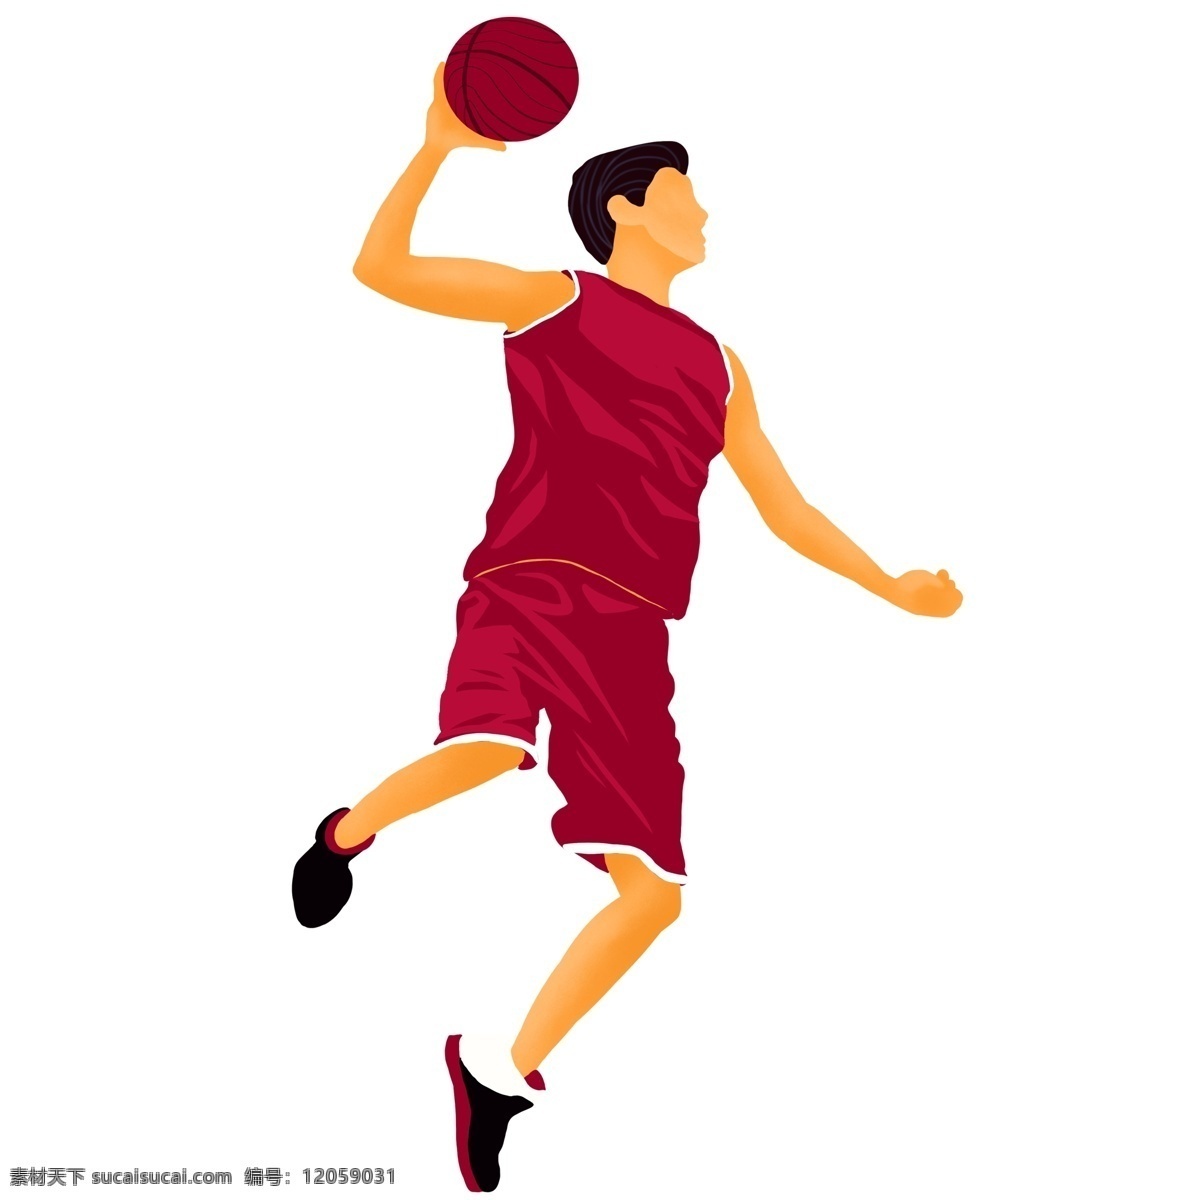 时尚 手绘 篮球 男孩 人物 插画 卡通 男人 男生 打篮球 运动